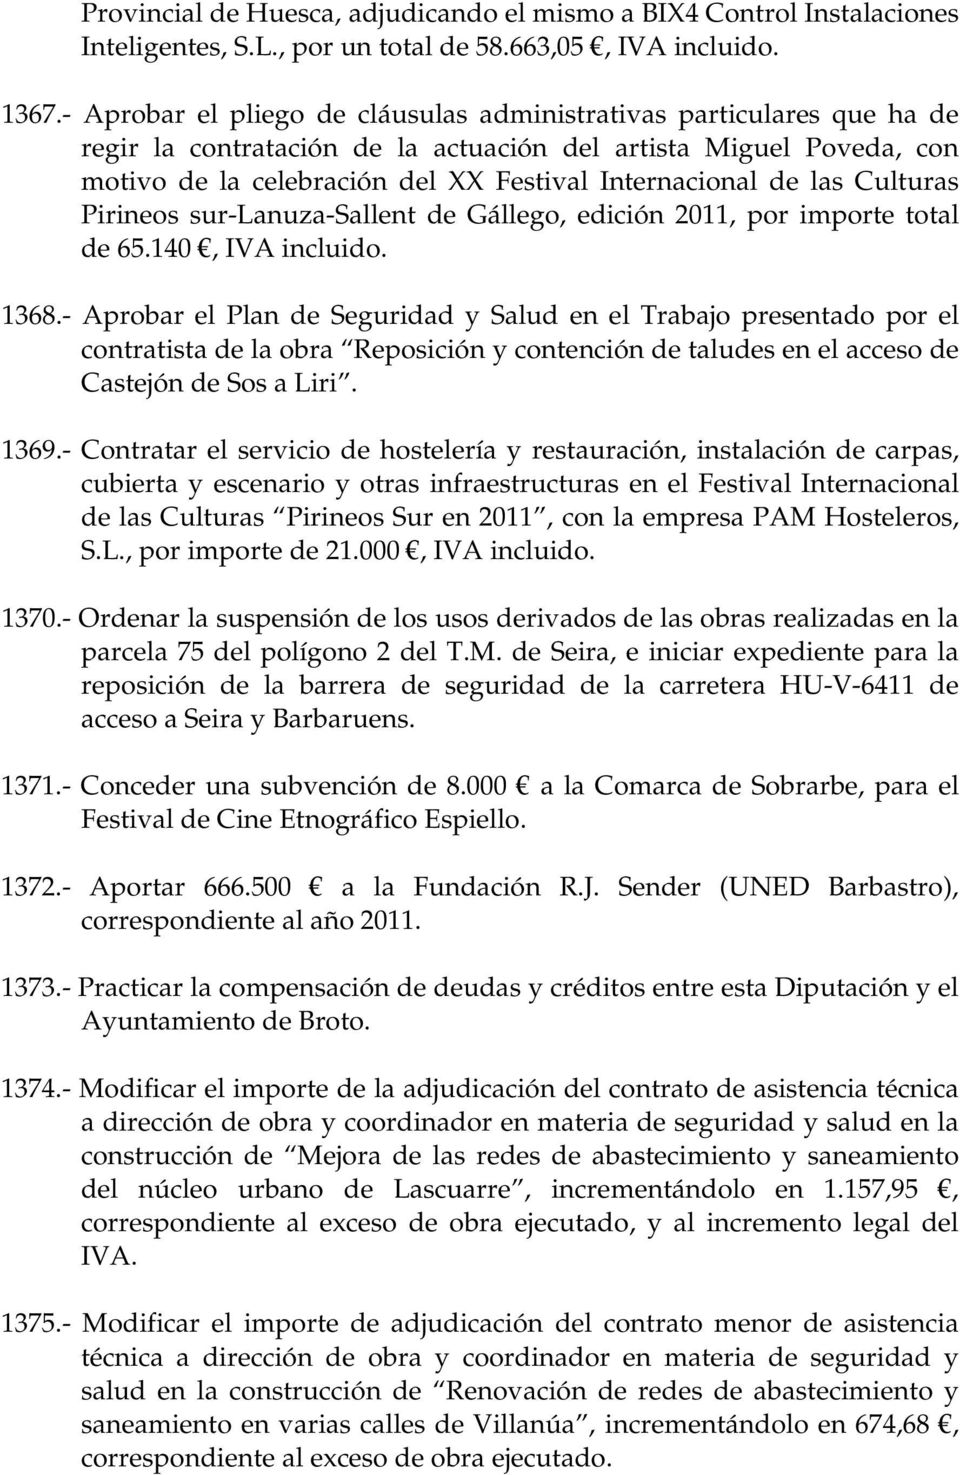 las Culturas Pirineos sur-lanuza-sallent de Gállego, edición 2011, por importe total de 65.140, IVA incluido. 1368.